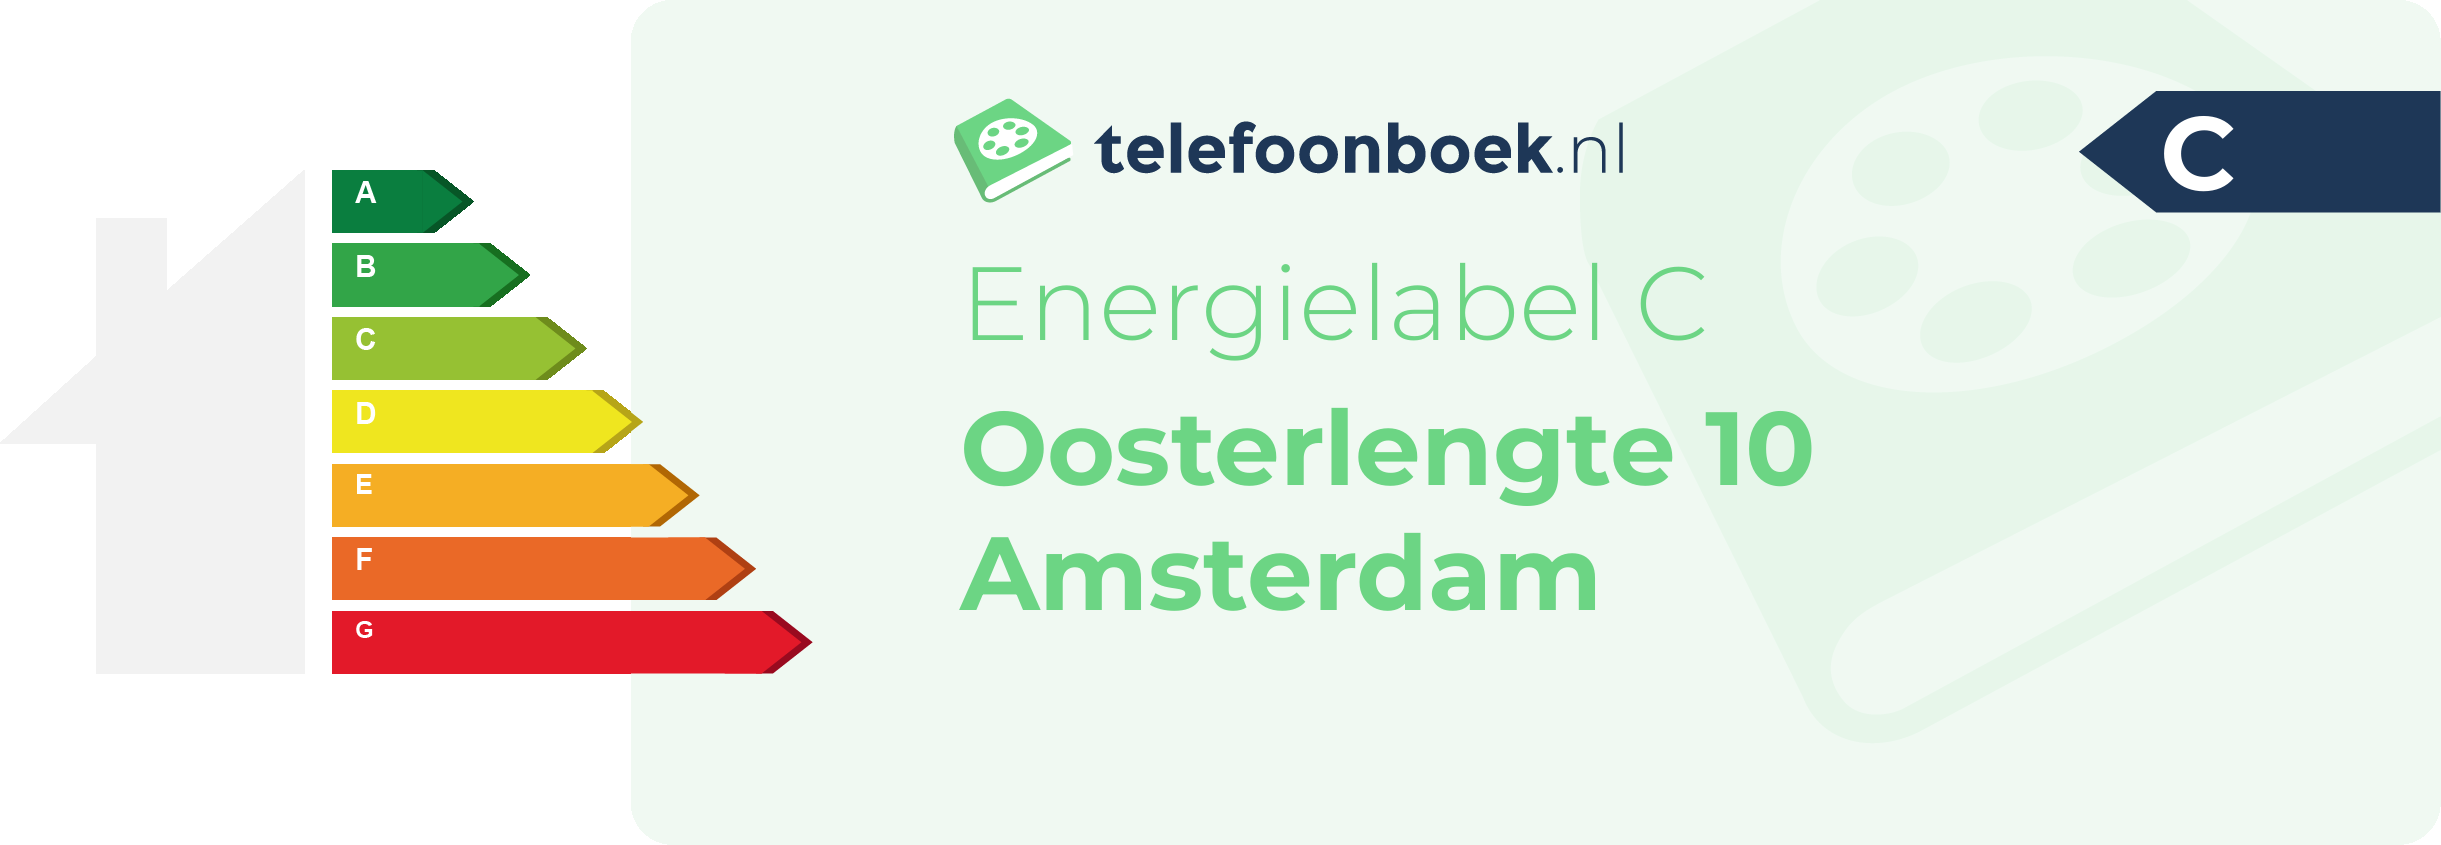 Energielabel Oosterlengte 10 Amsterdam